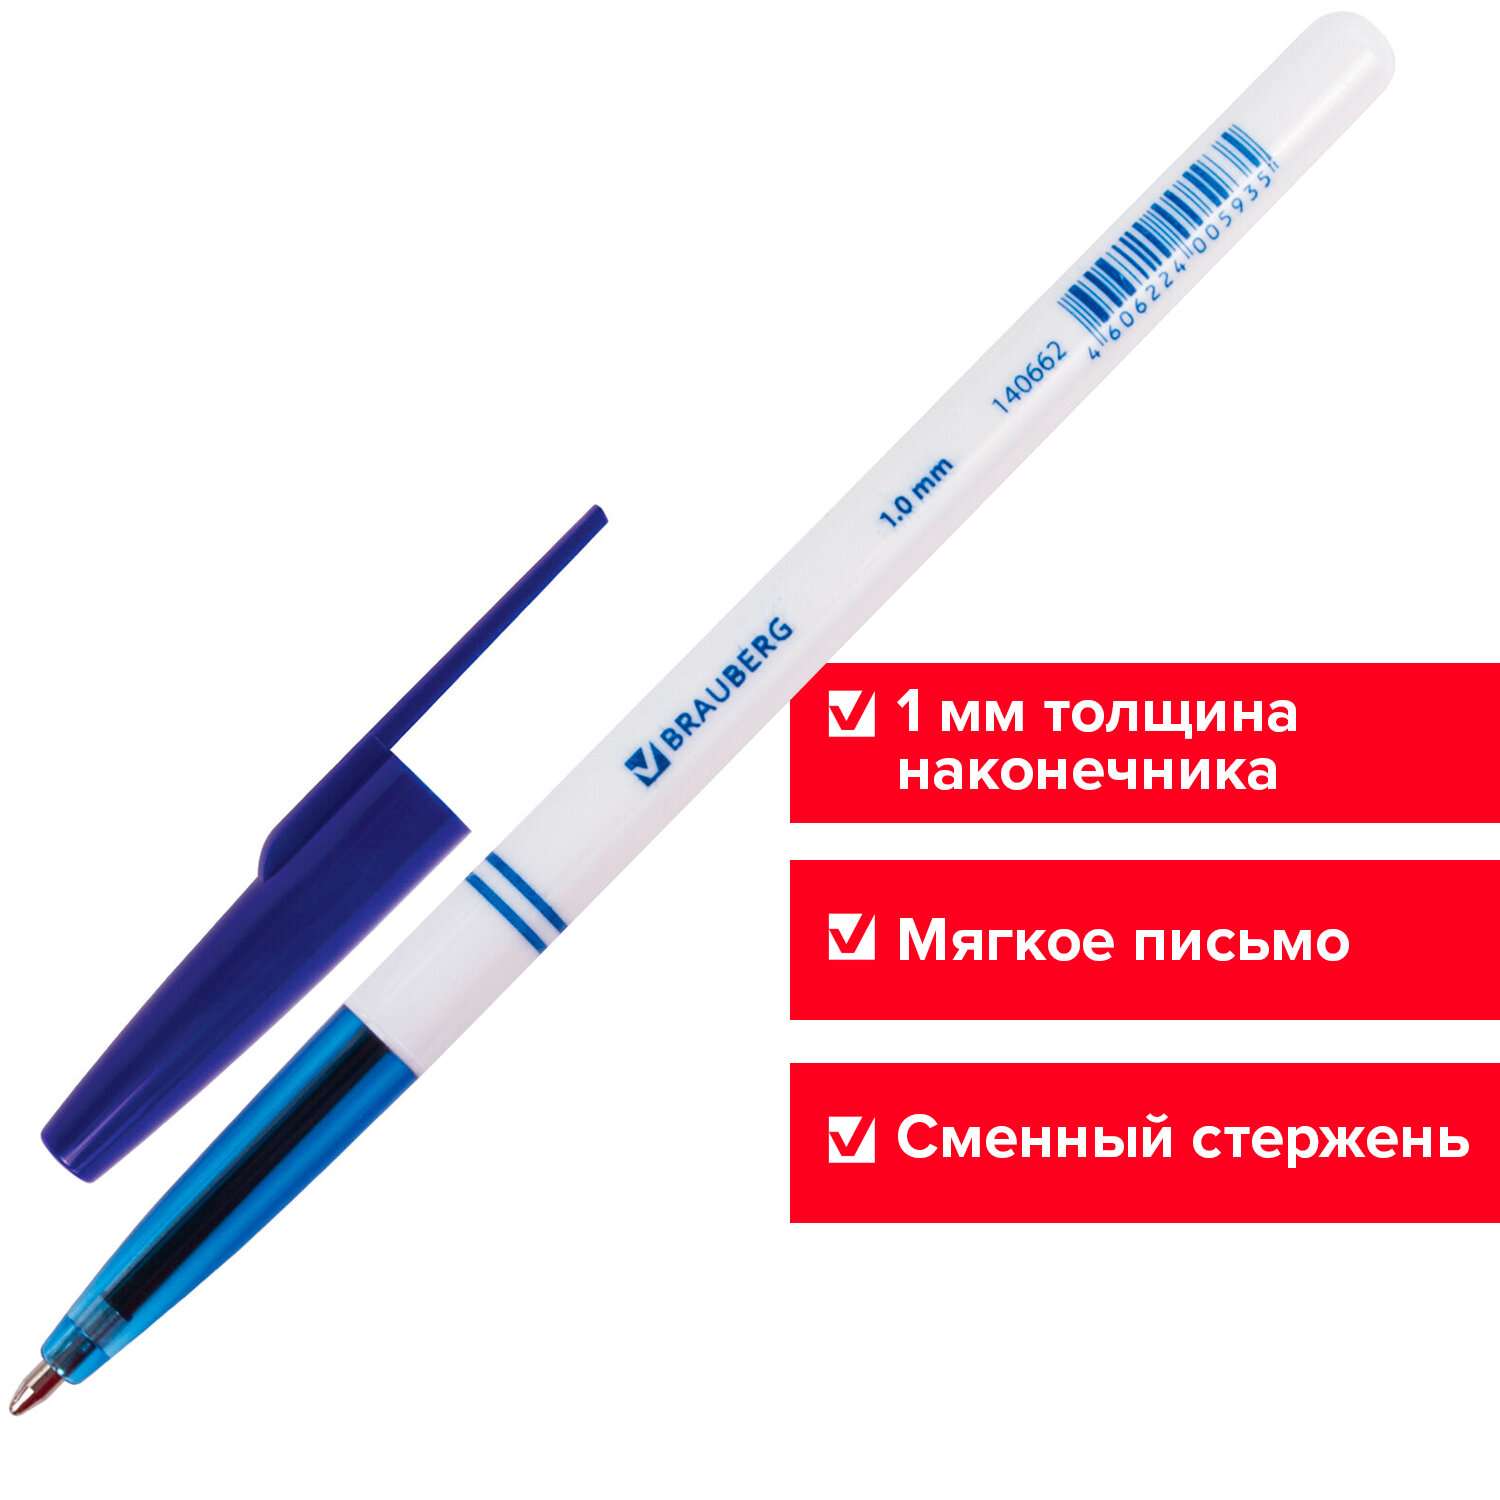 Ручки шариковые Brauberg синие набор 24 штуки - фото 11